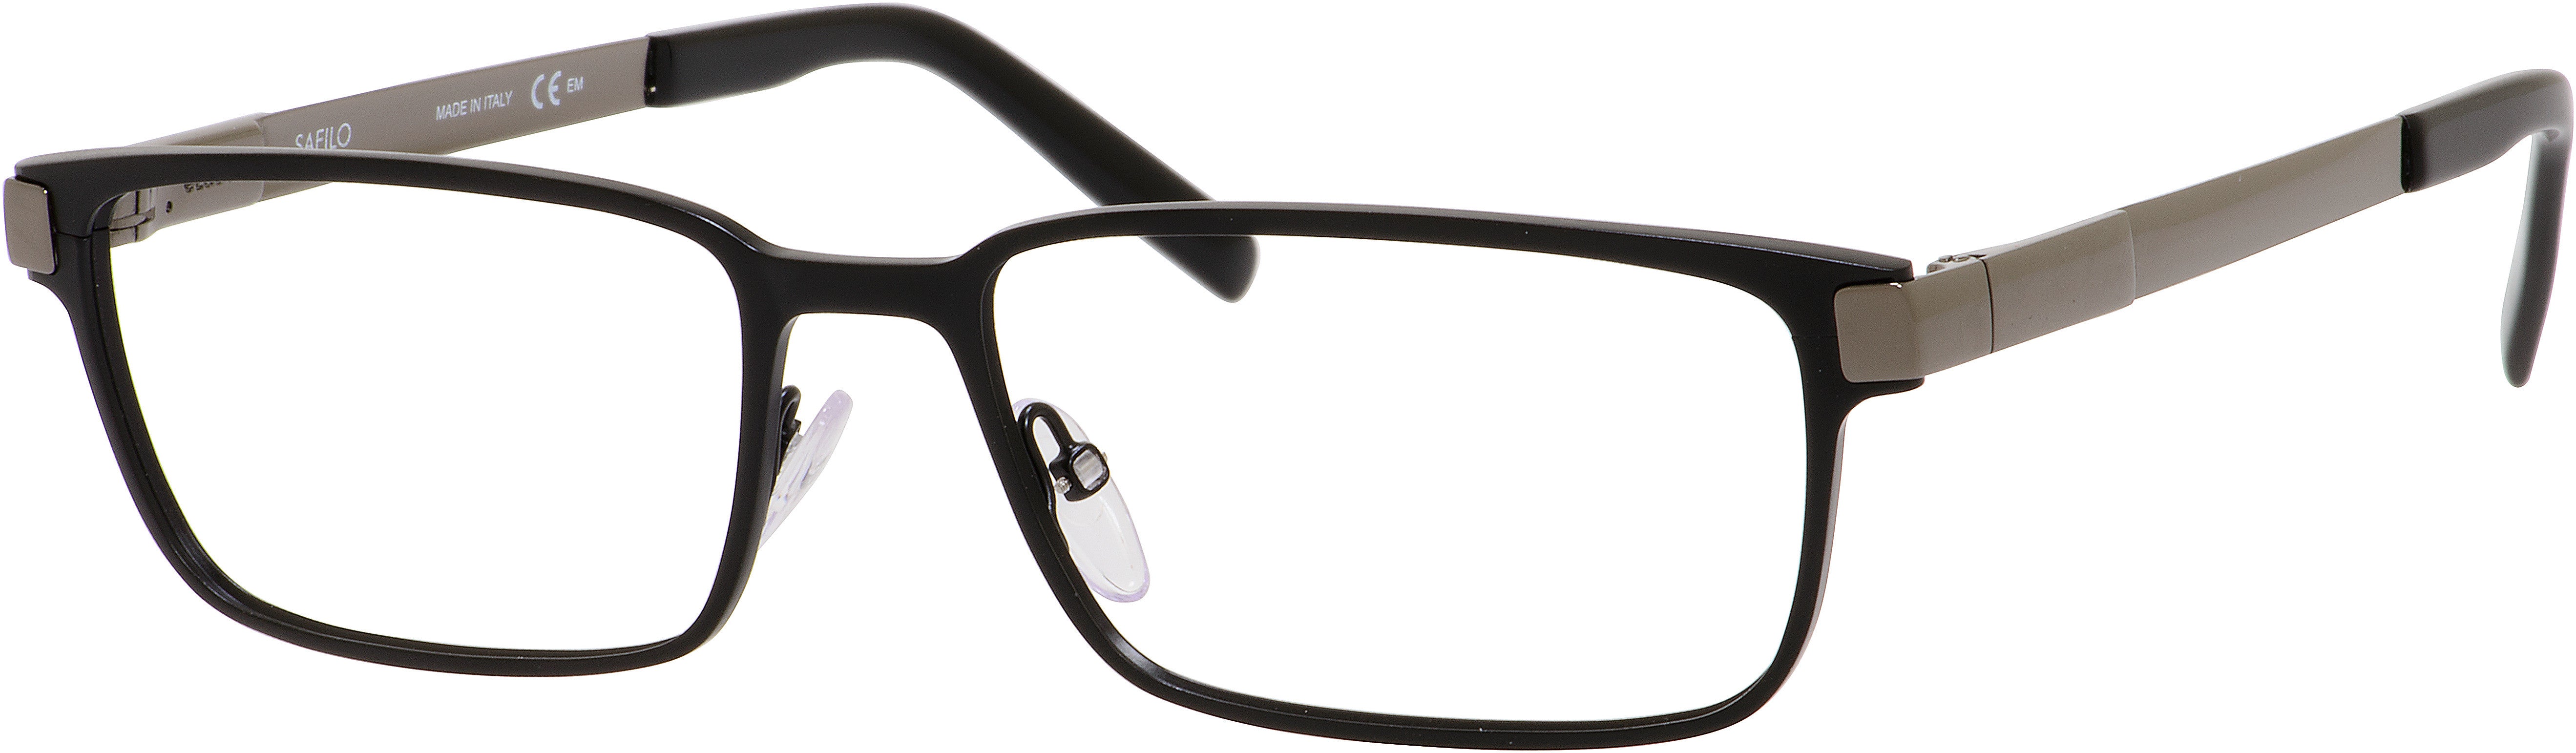  Elasta 3110 Rectangular Eyeglasses 0TI7-0TI7  Ruthenium Matte Black (00 Demo Lens)